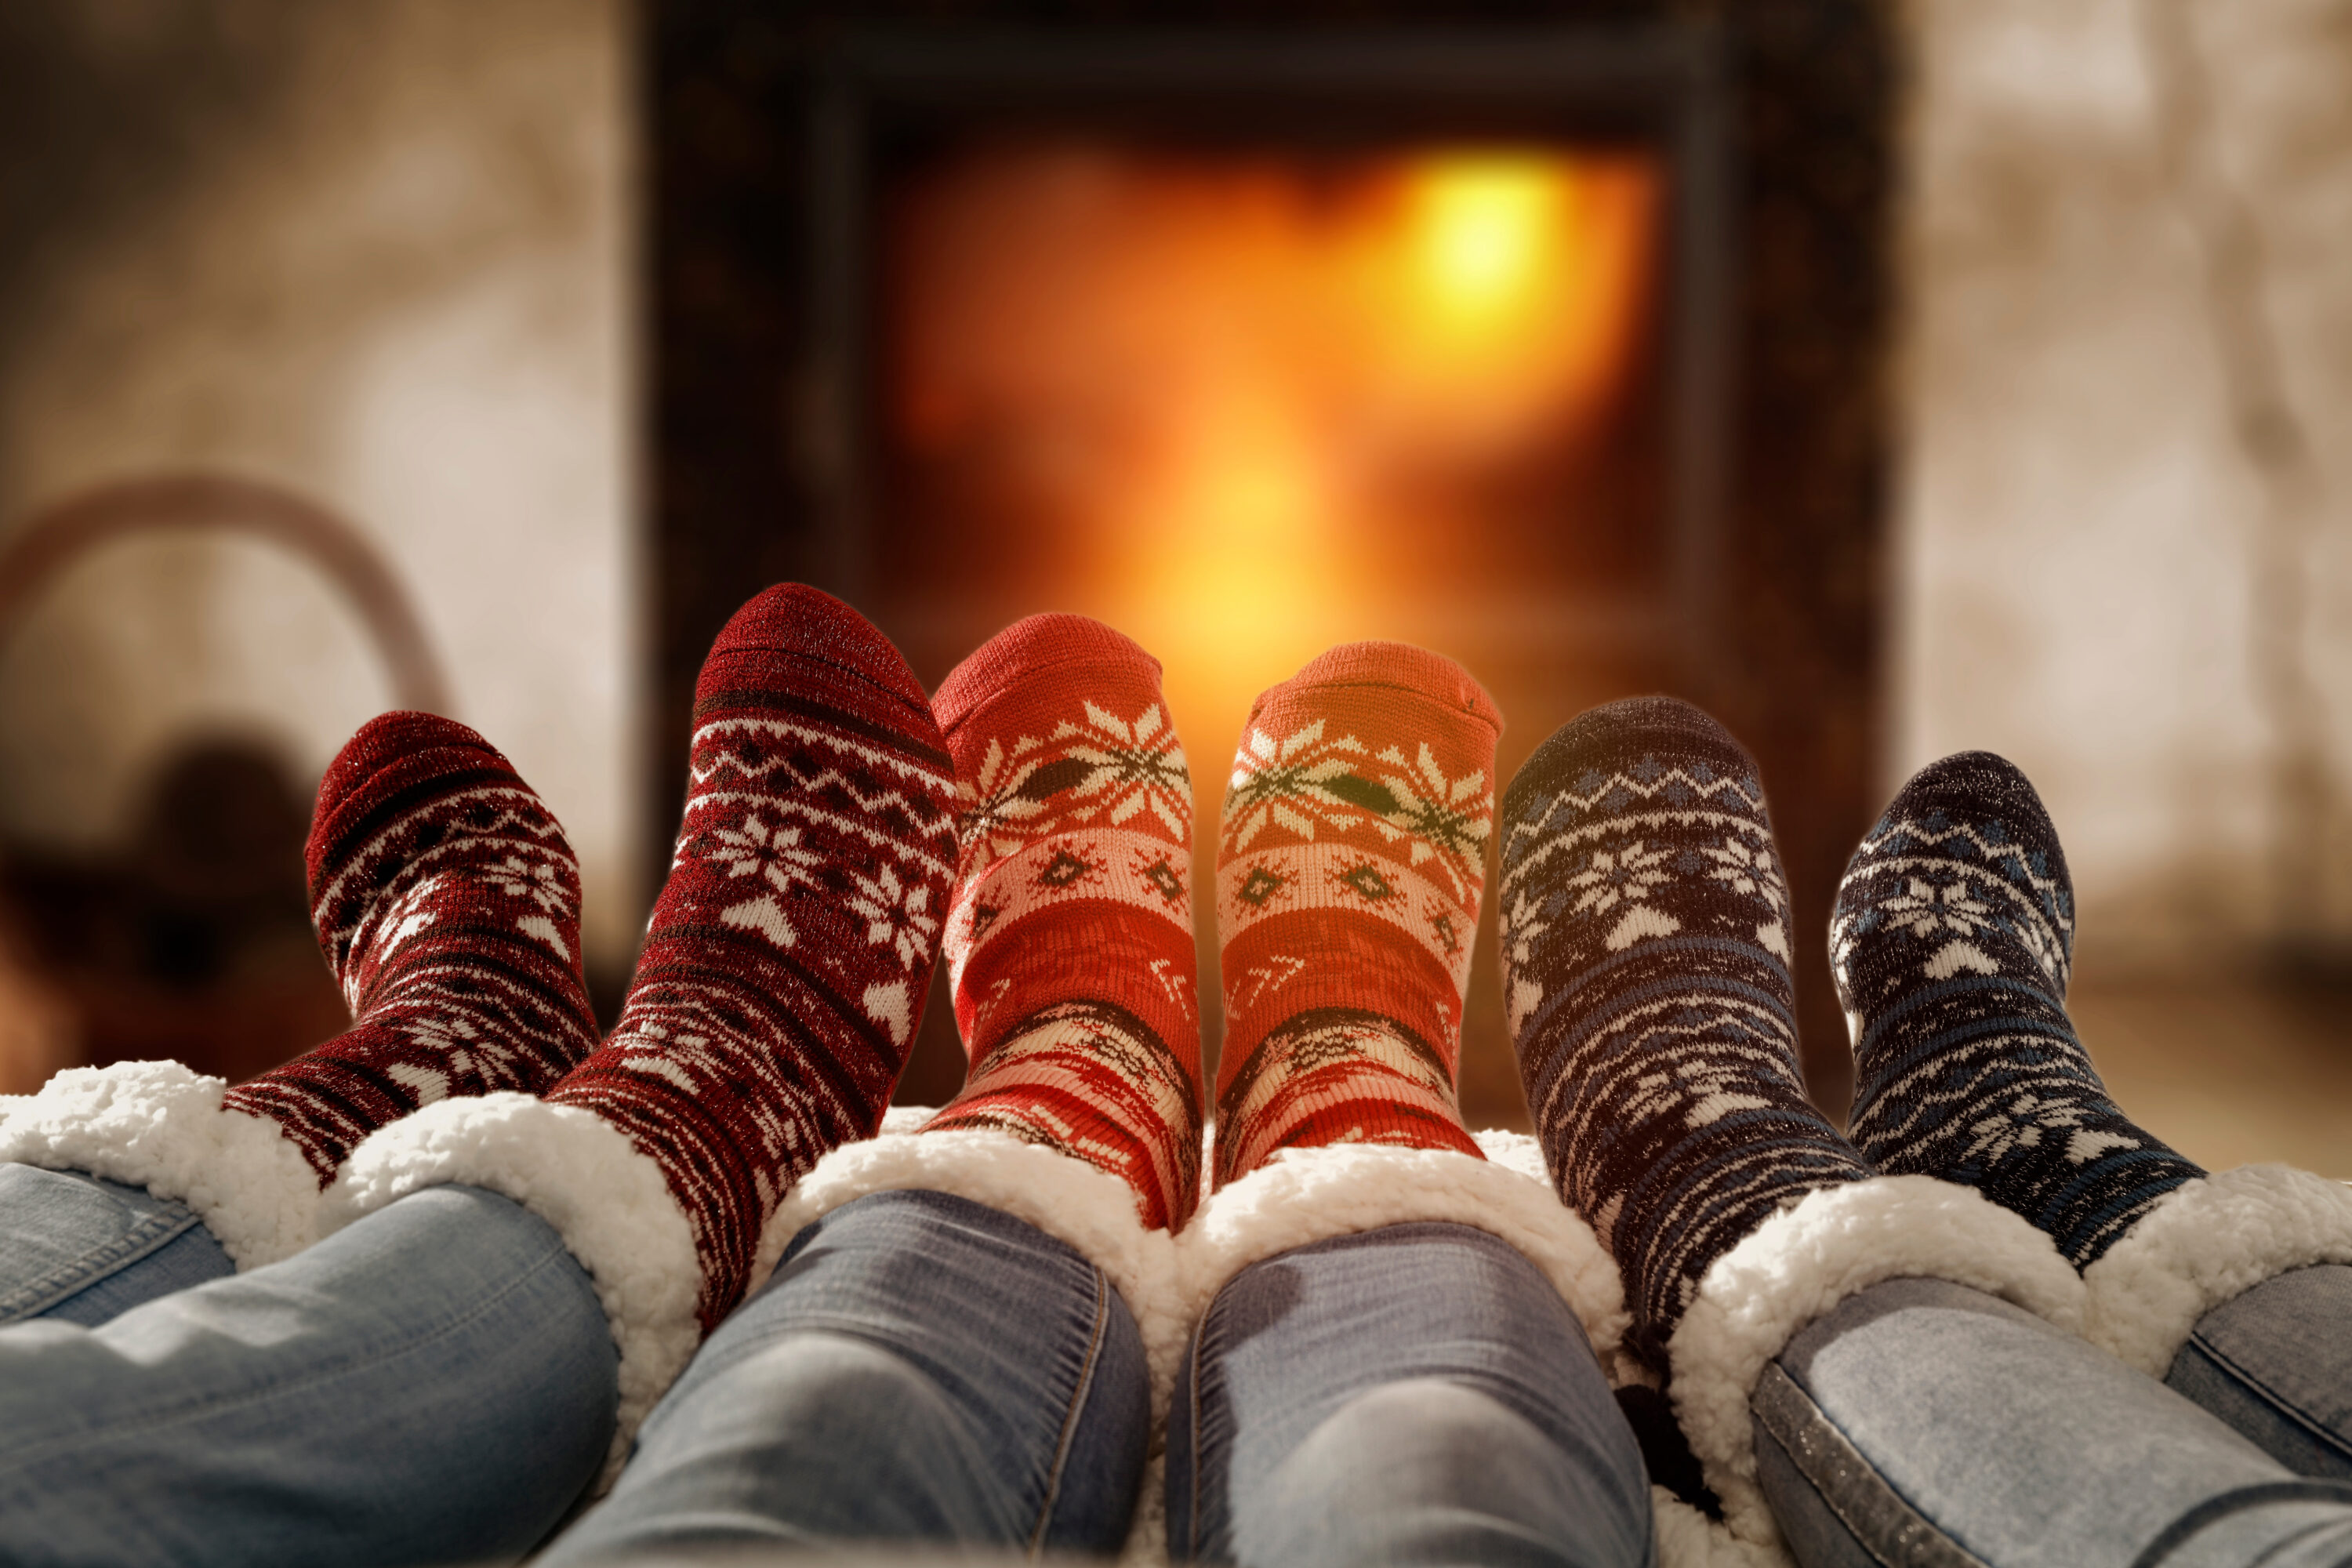 Women's feet in festive slippers in front of fireplace